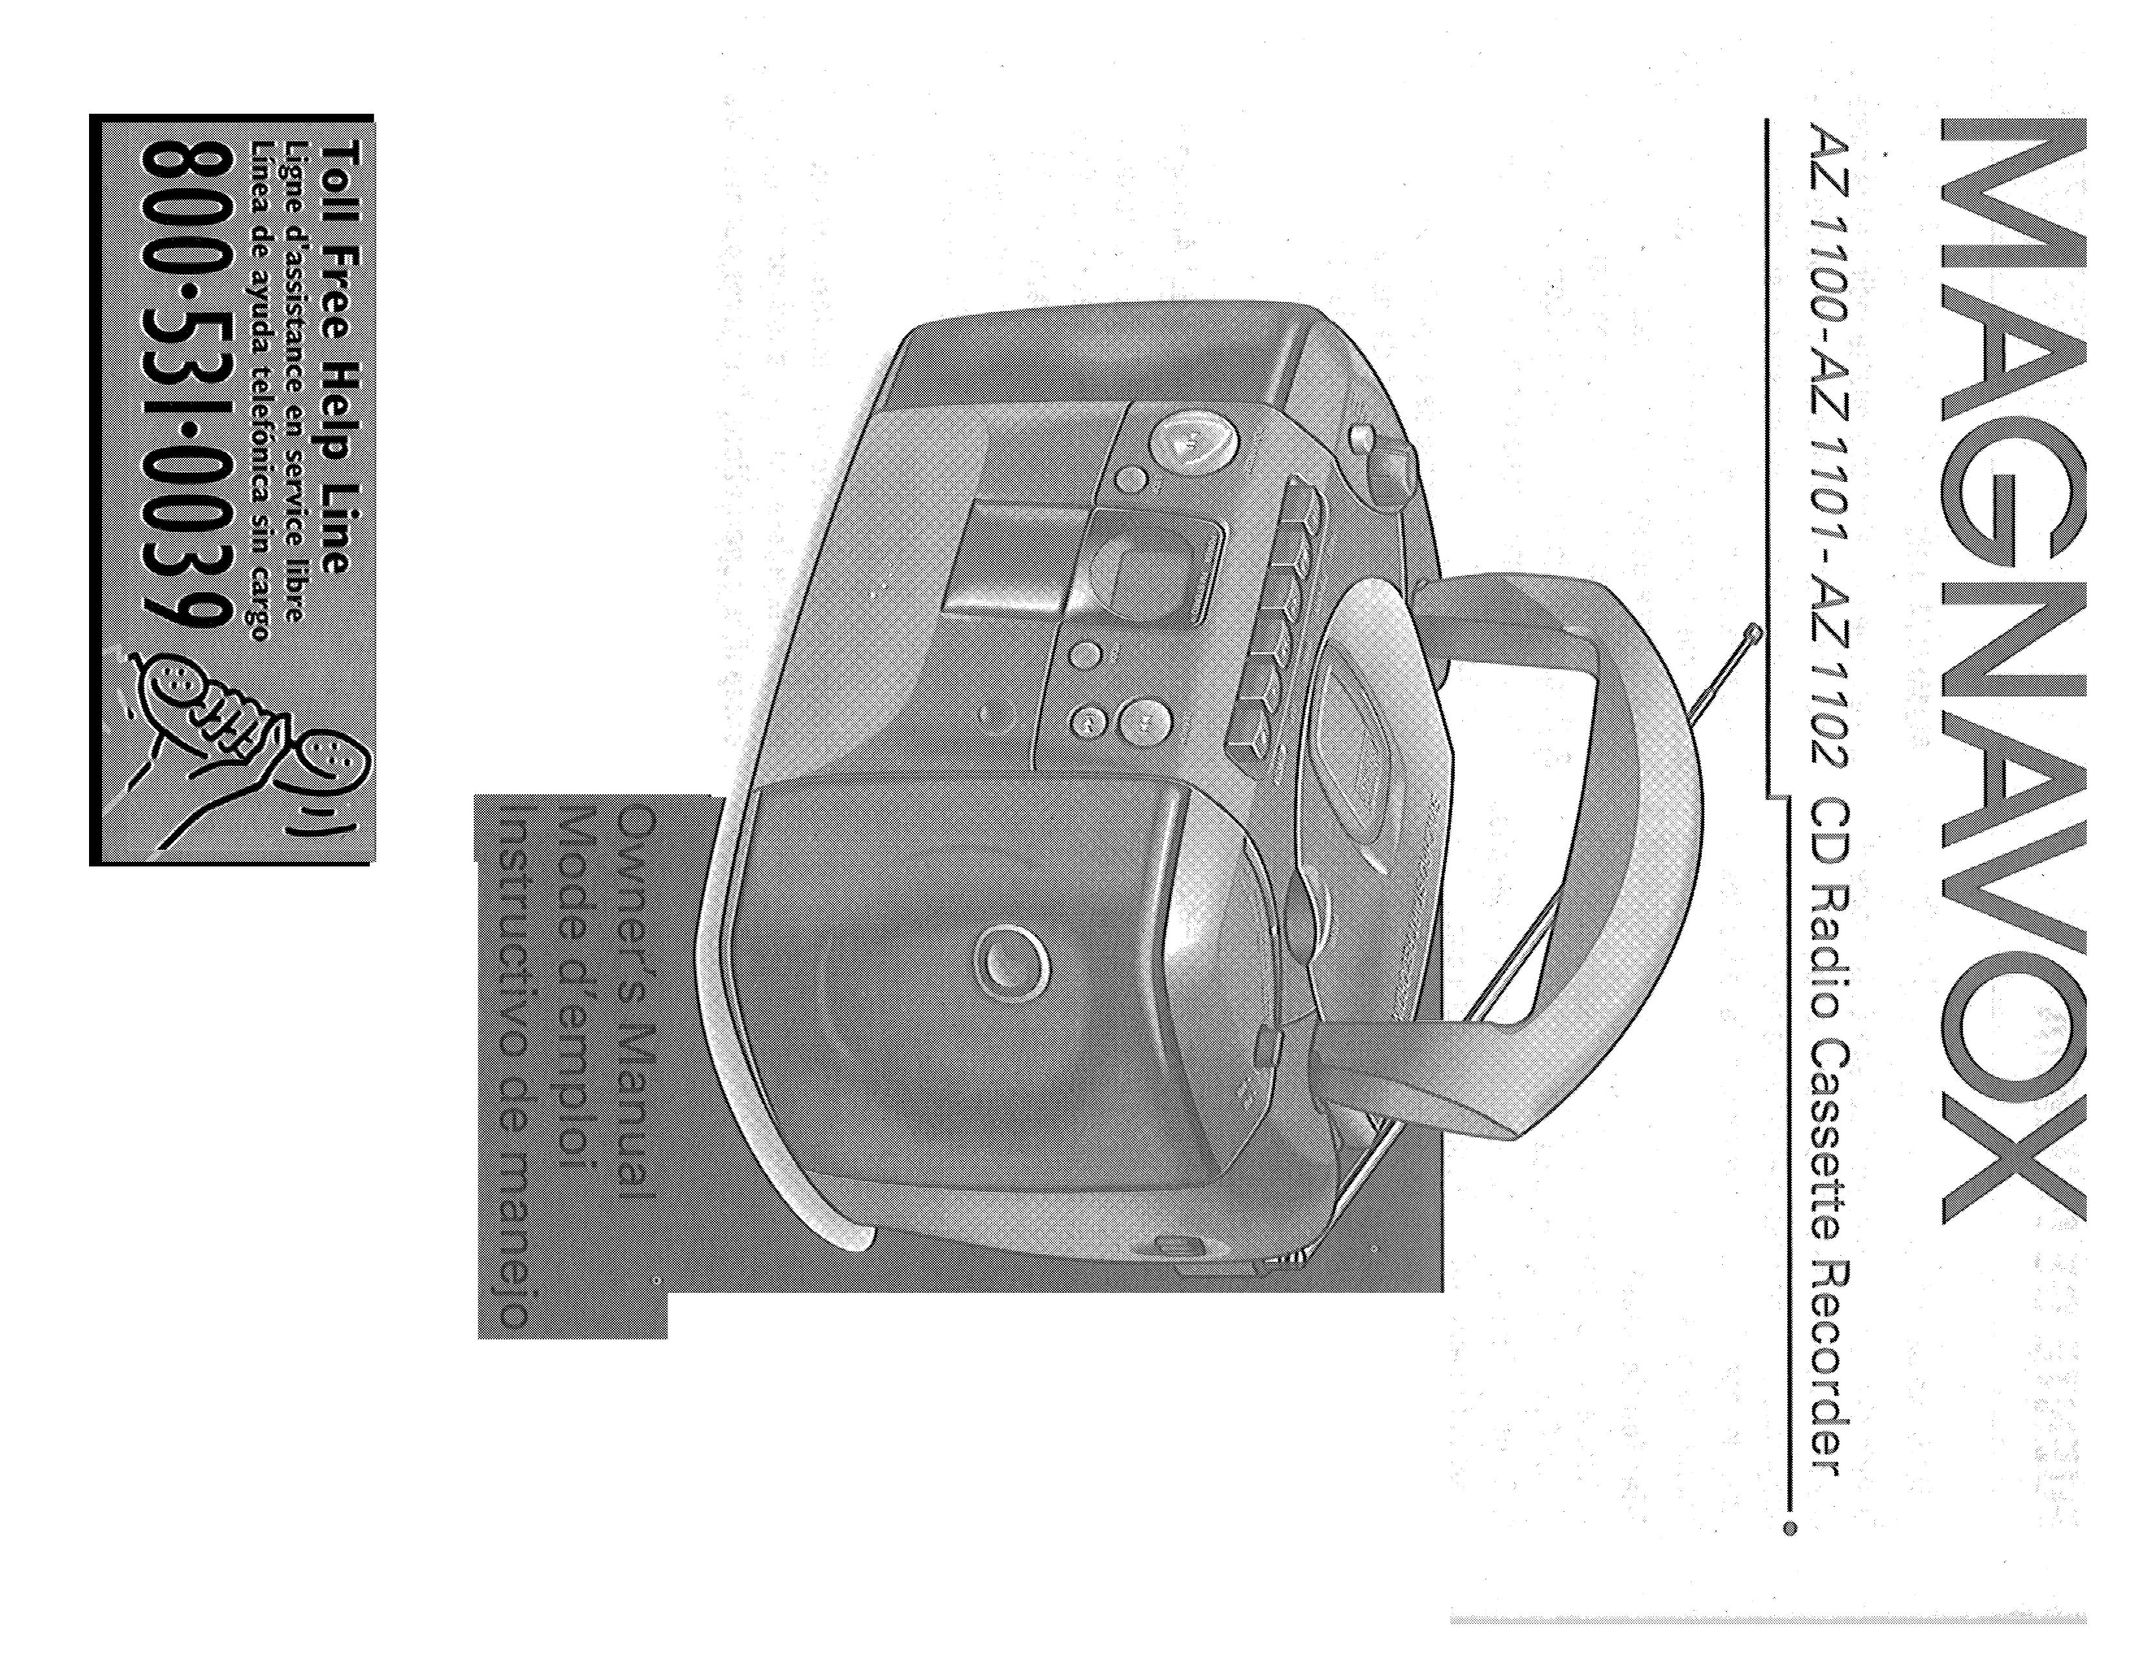 Magnavox AZ-1103 CD Player User Manual